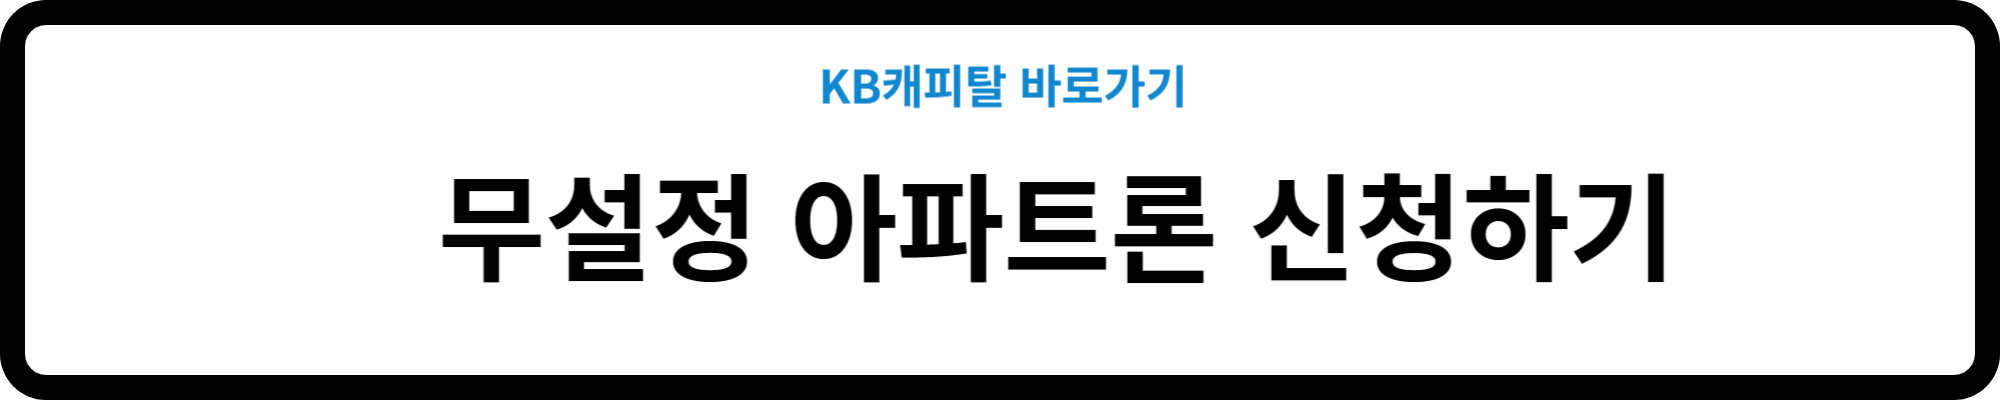 KB캐피탈 무설정 아파트론 신청방법 소개